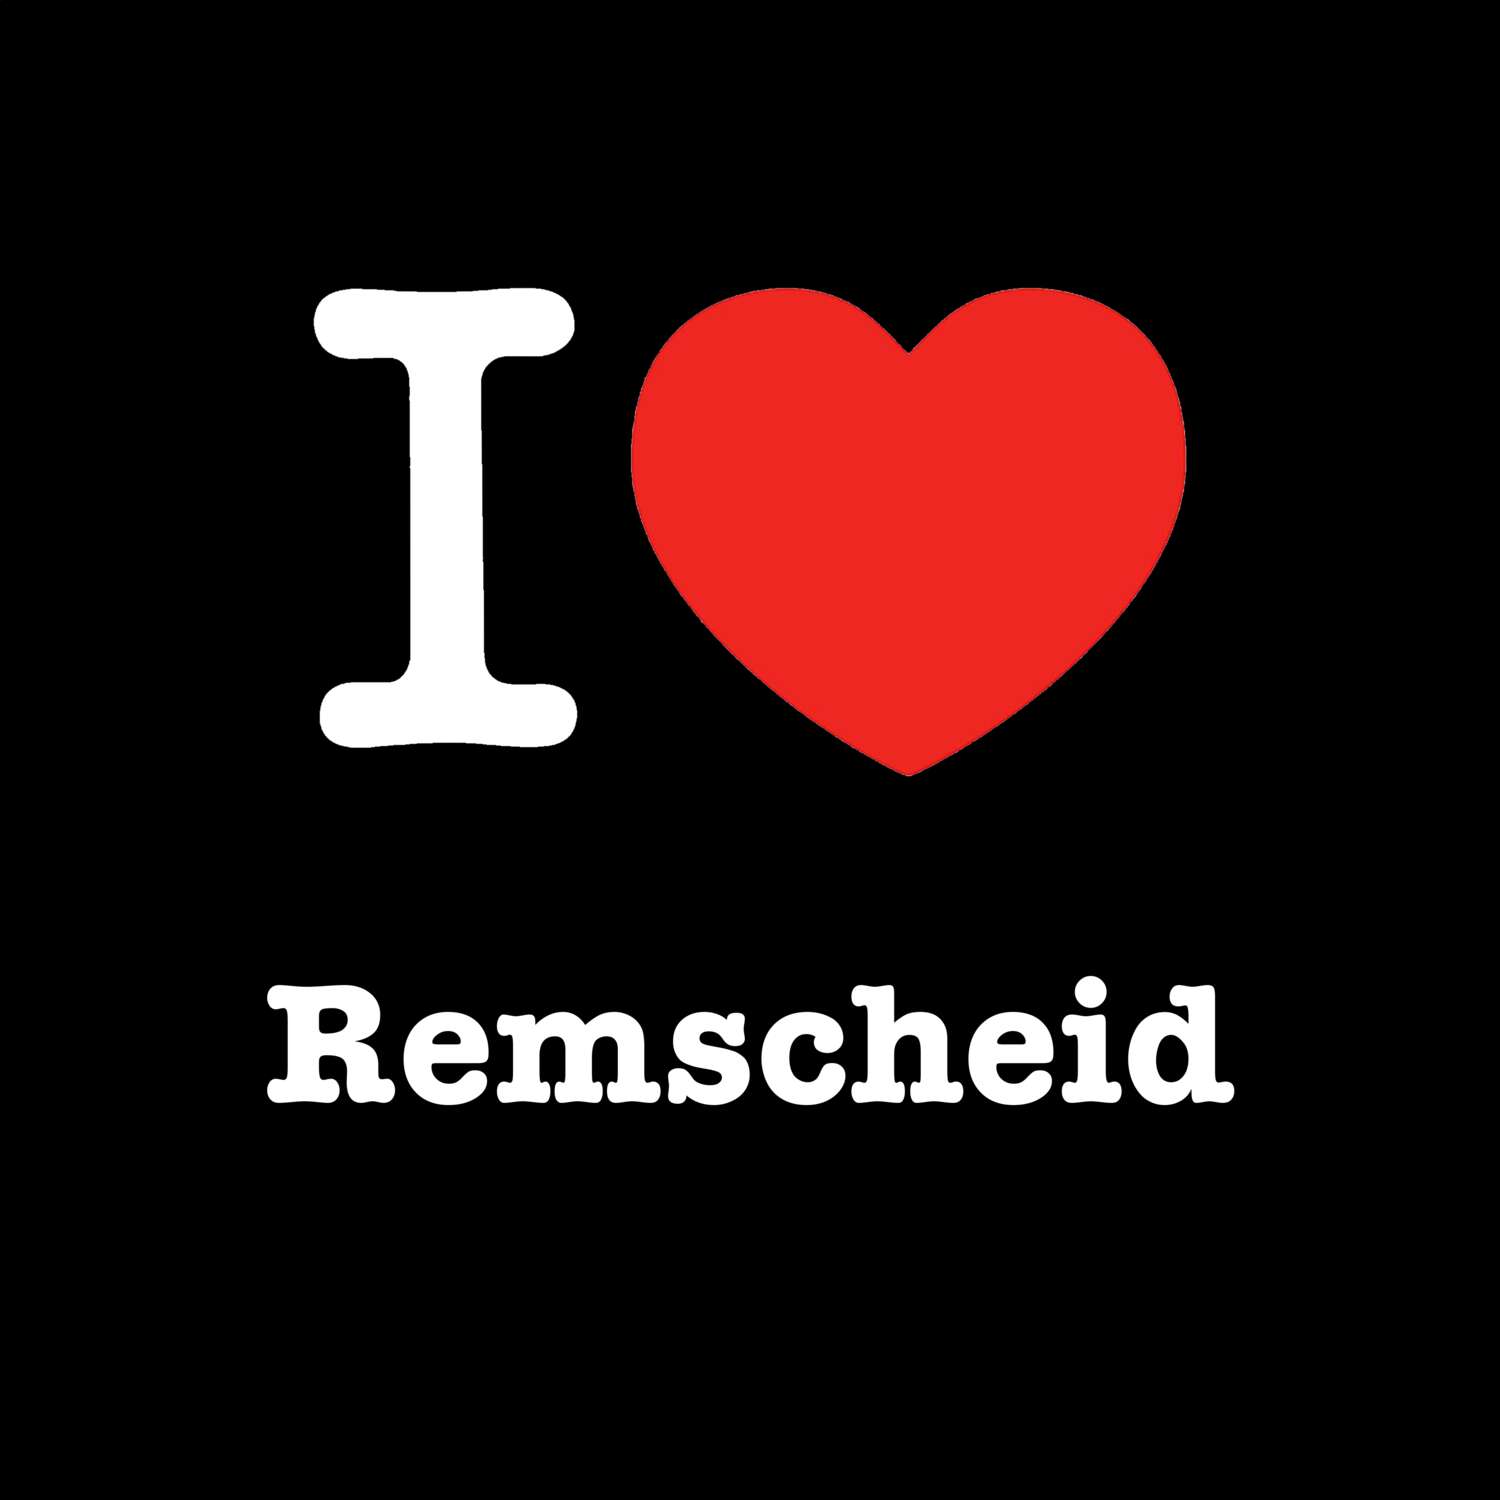 Remscheid T-Shirt »I love«